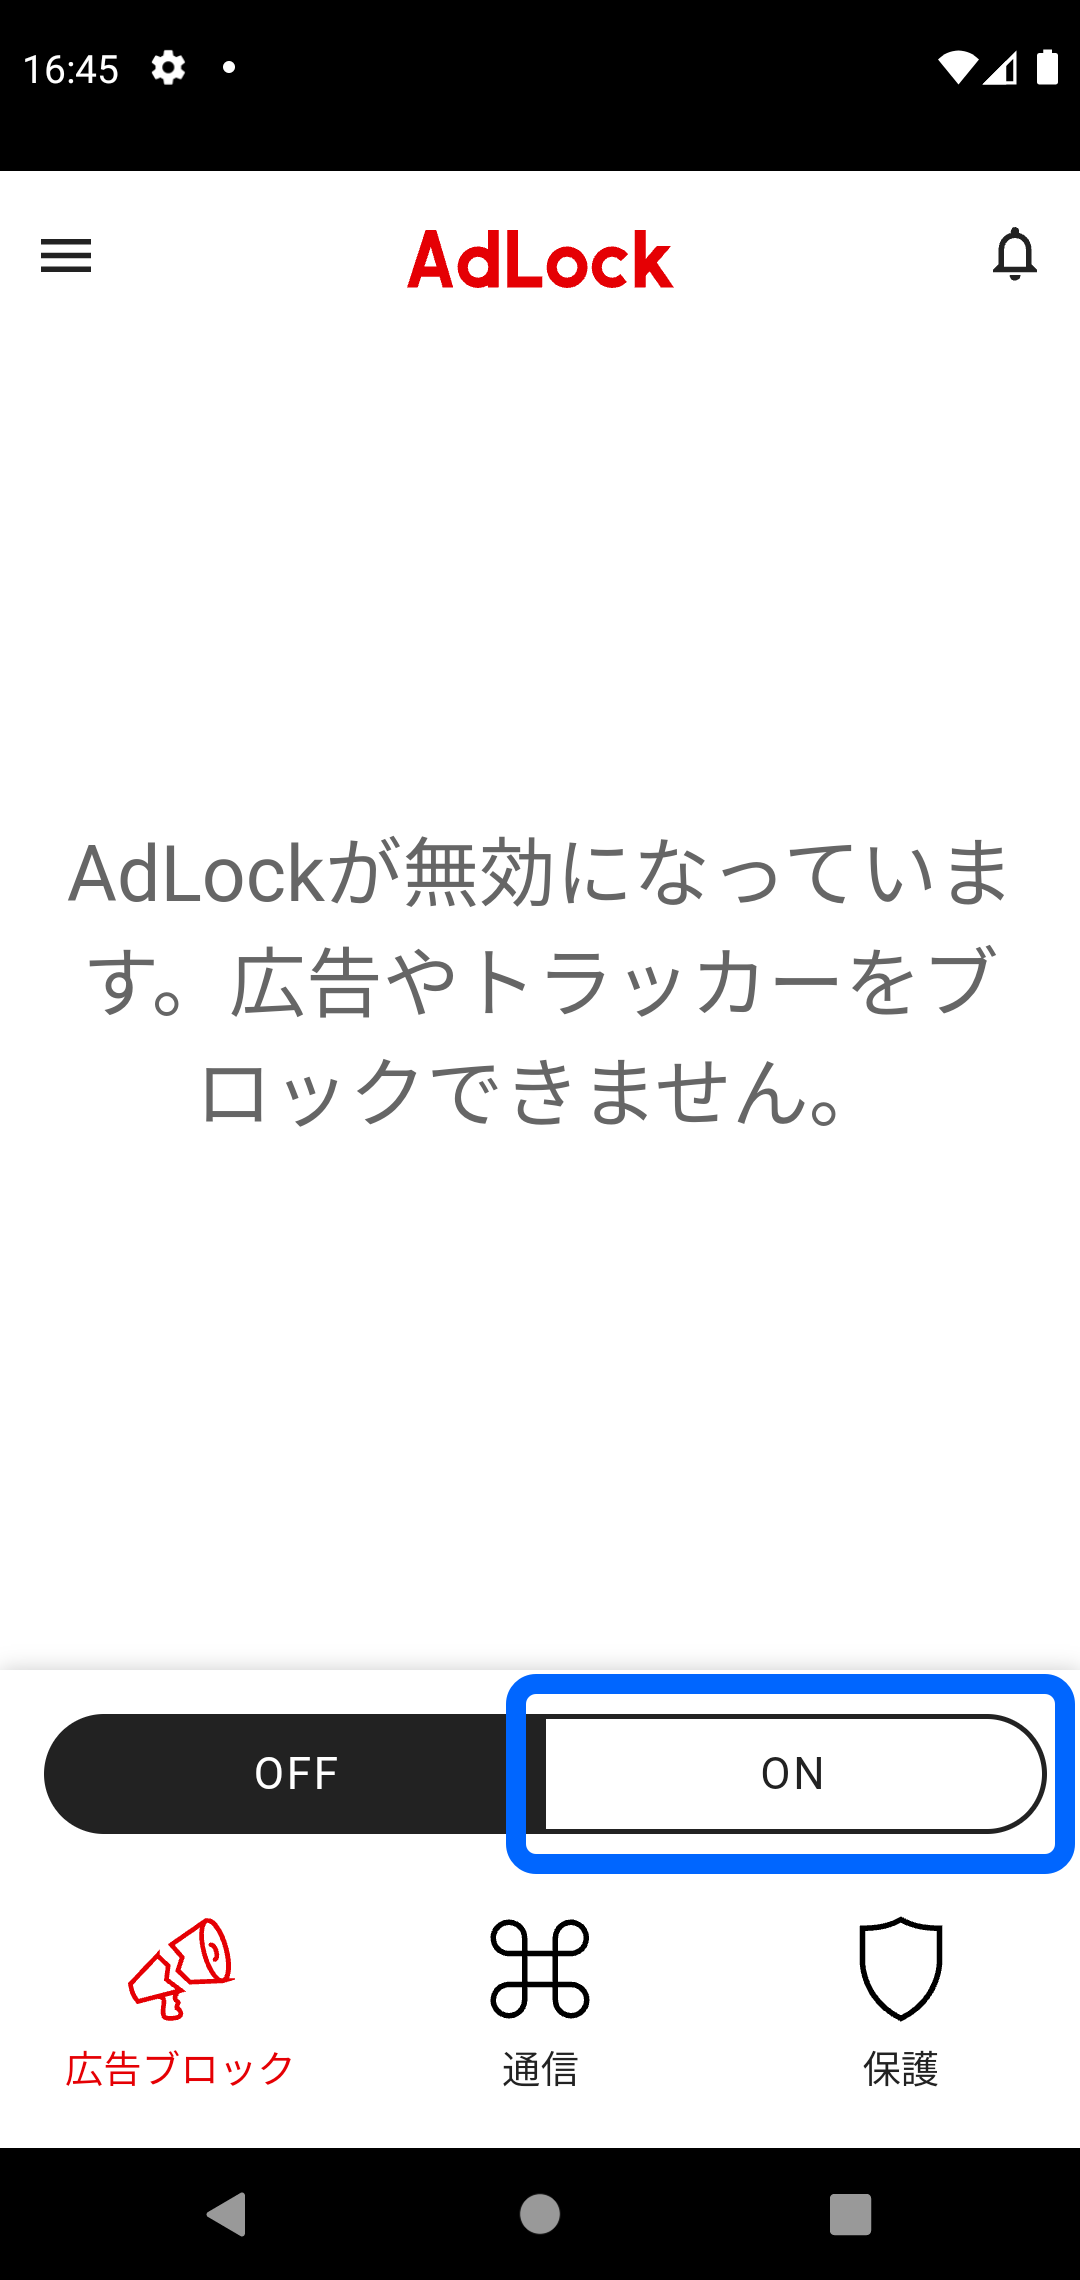 AdLock 広告ブロック ON